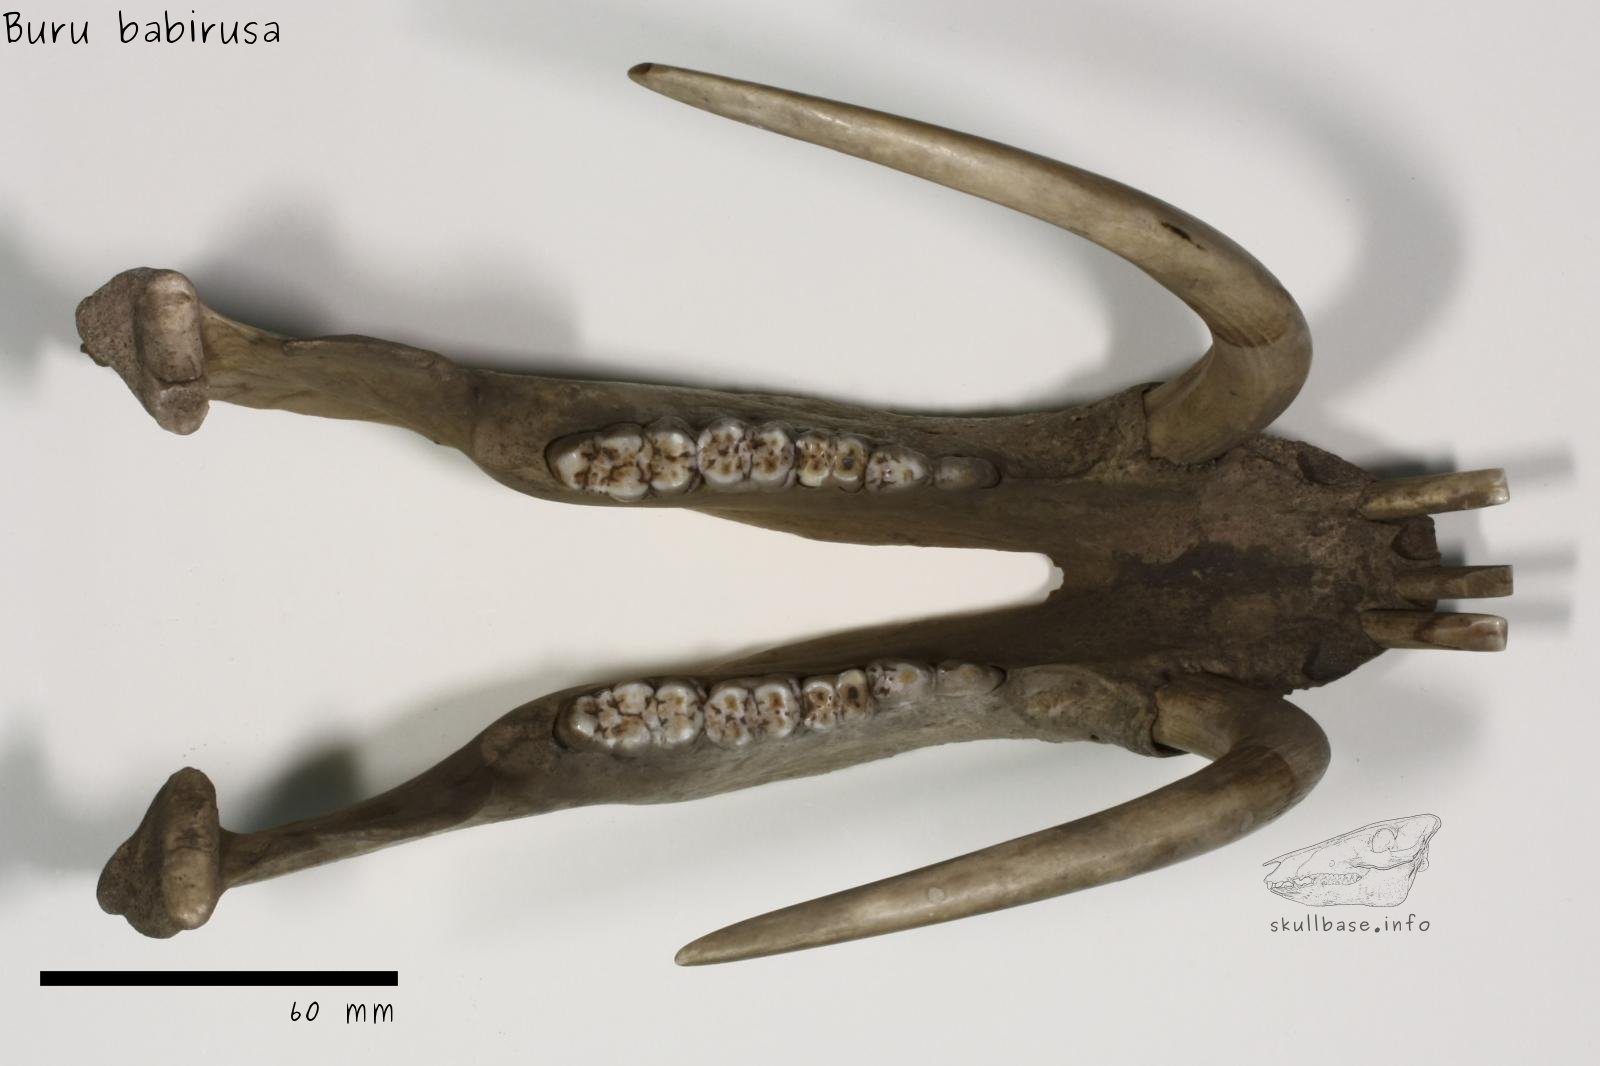 Buru babirusa (Babyrousa babyrussa) jaw